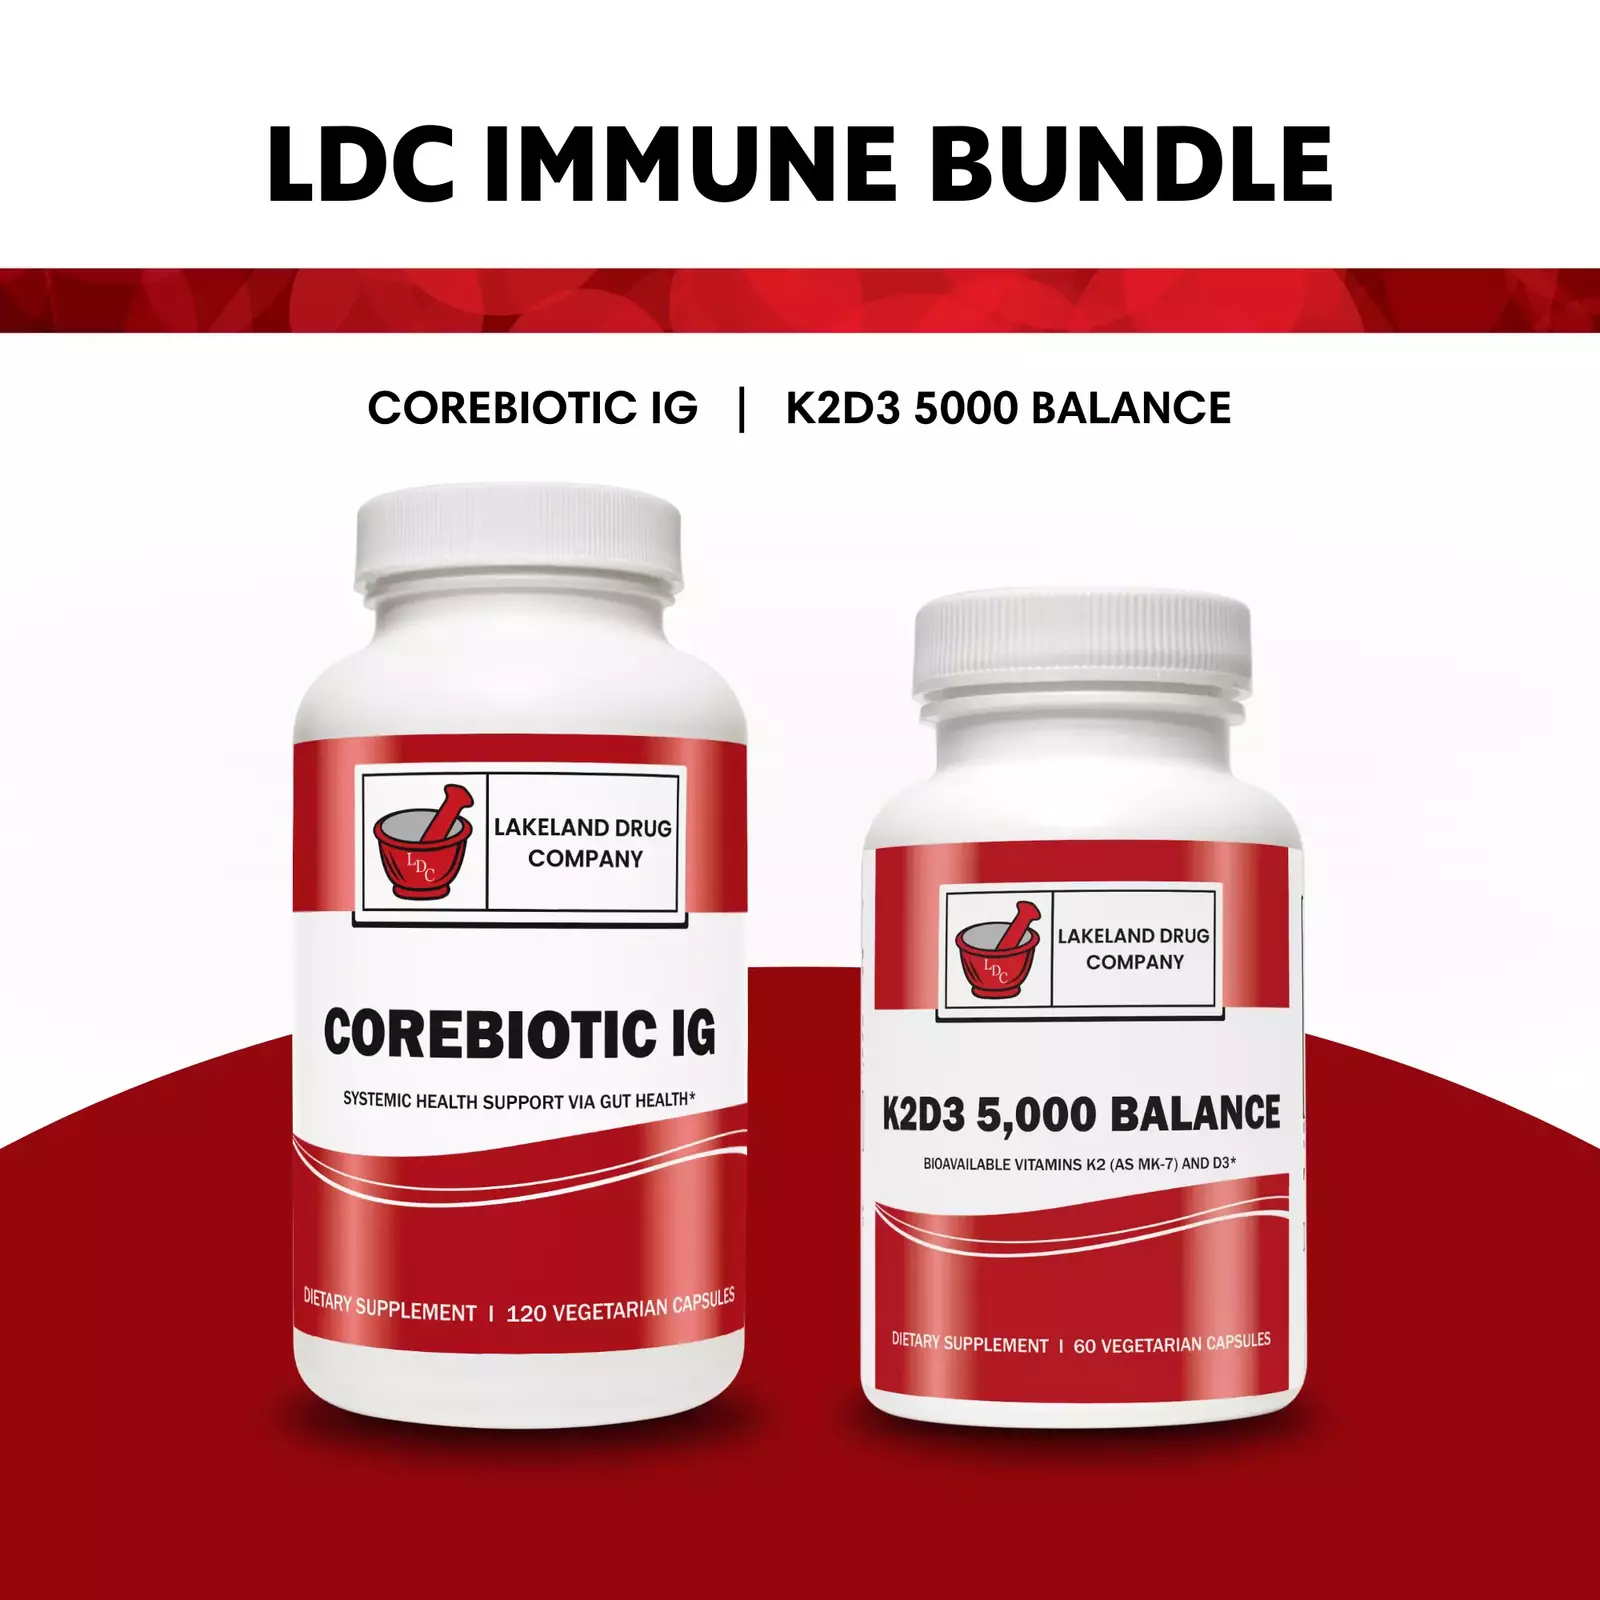 LDC Immune Bundle